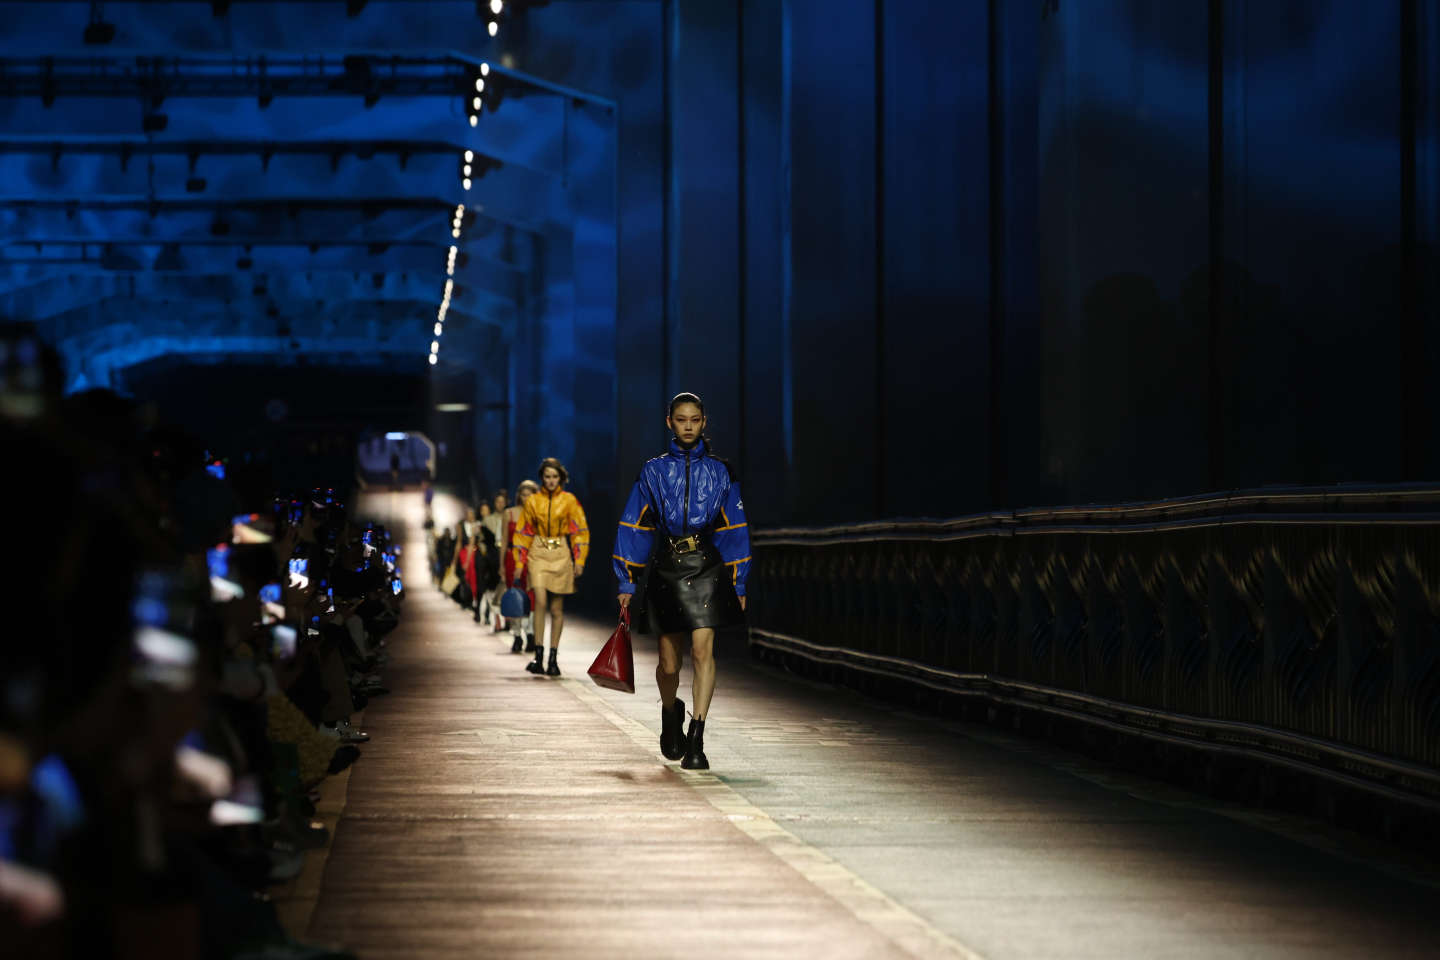 Louis Vuitton bridges cultures in Seoul